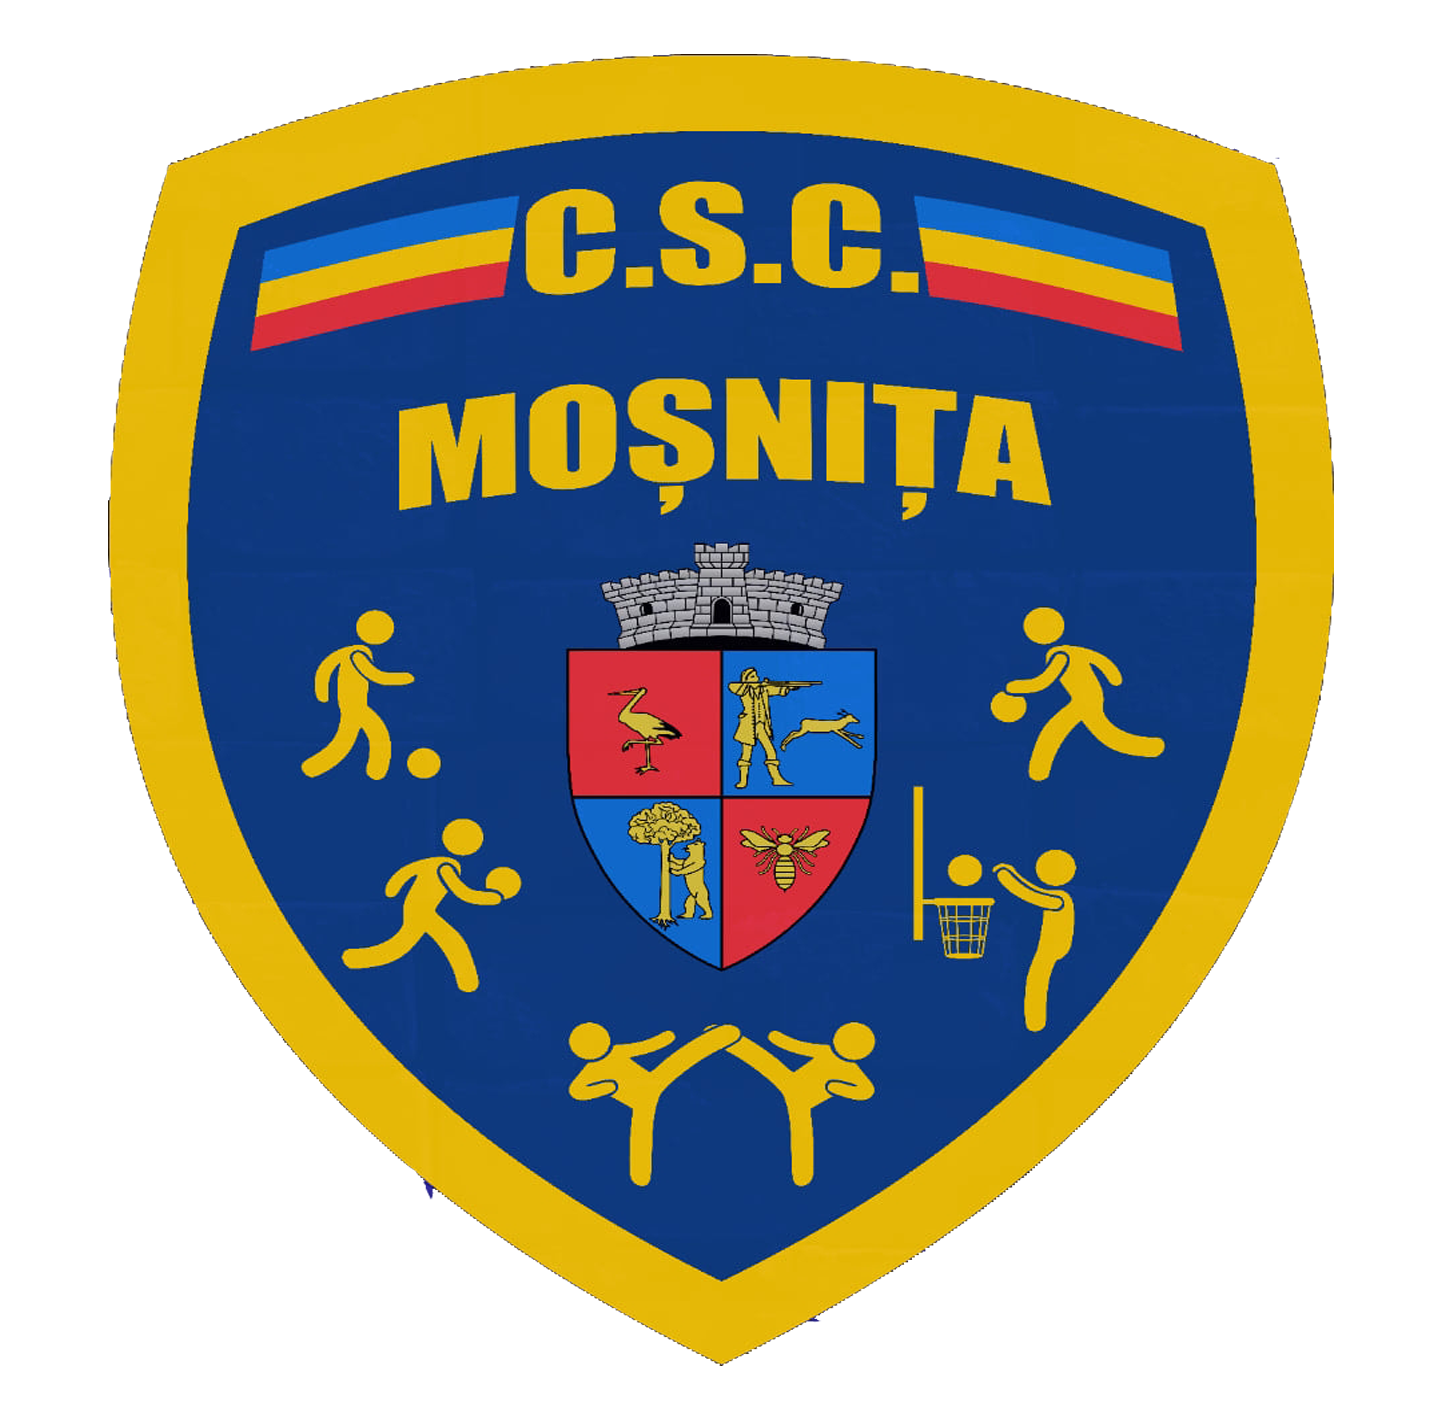 CSC MOSNITA